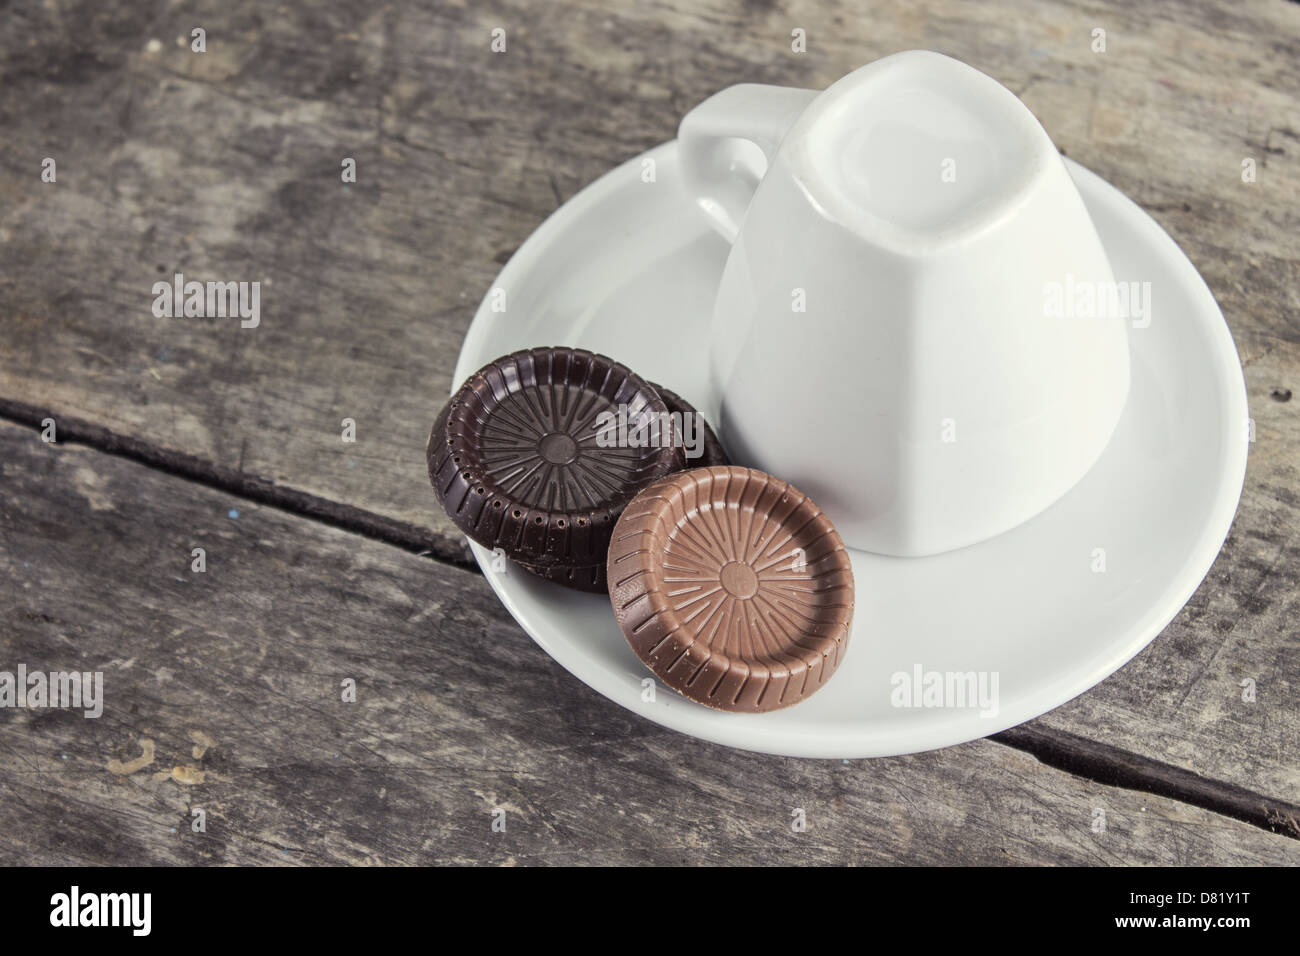 Tasse à café et chocolat sur table en bois Banque D'Images